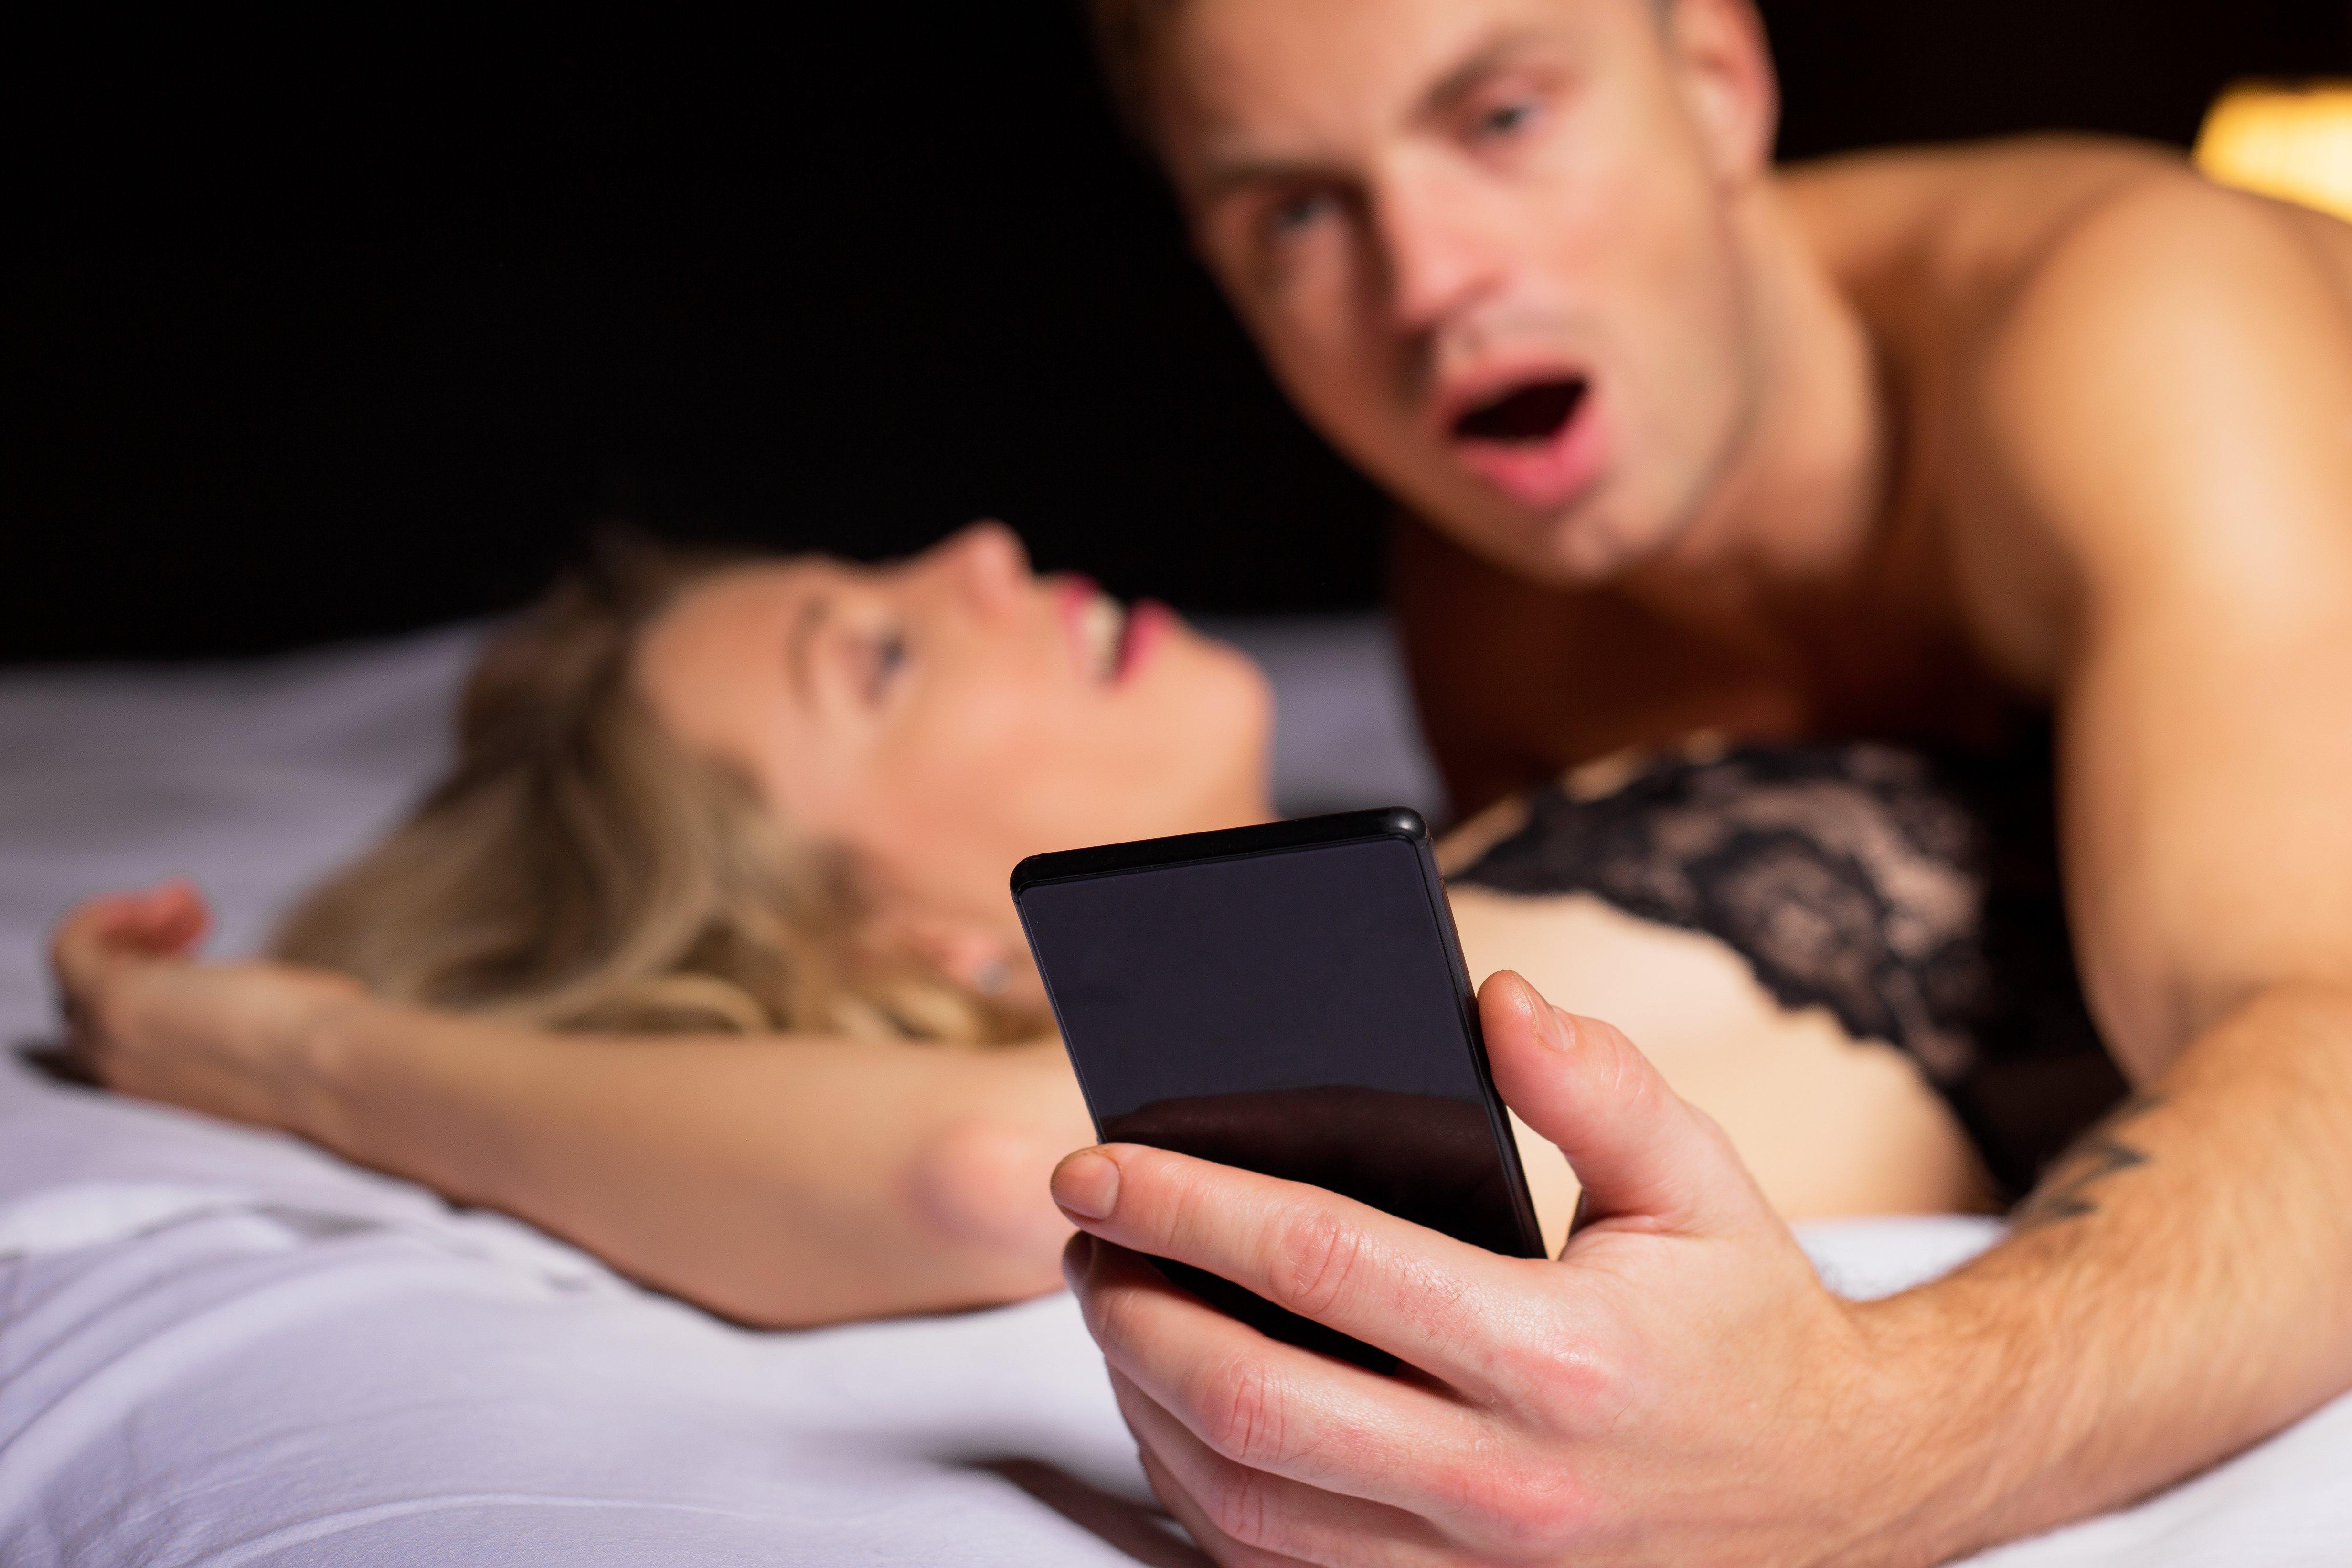 Medicii au facut anuntul: ce se intampla in corpul tau daca tii telefonul in pat sau langa pat noaptea, in timpul somnului! Ai mare grija, se pare ca nu este de gluma cu asa ceva!